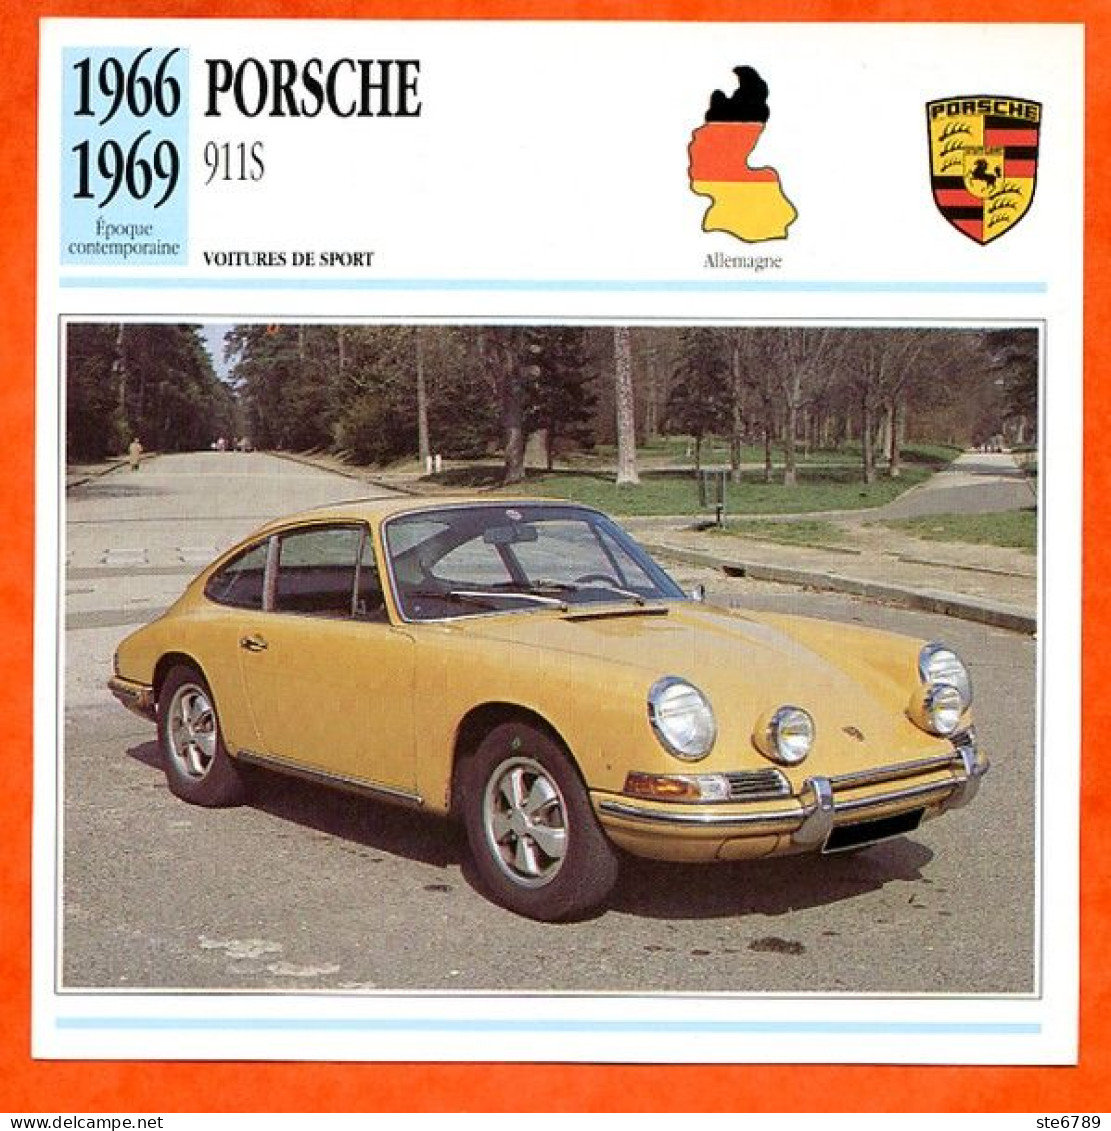 PORSCHE 911 S 1966 Voiture De Sport Allemagne Fiche Technique Automobile - Cars